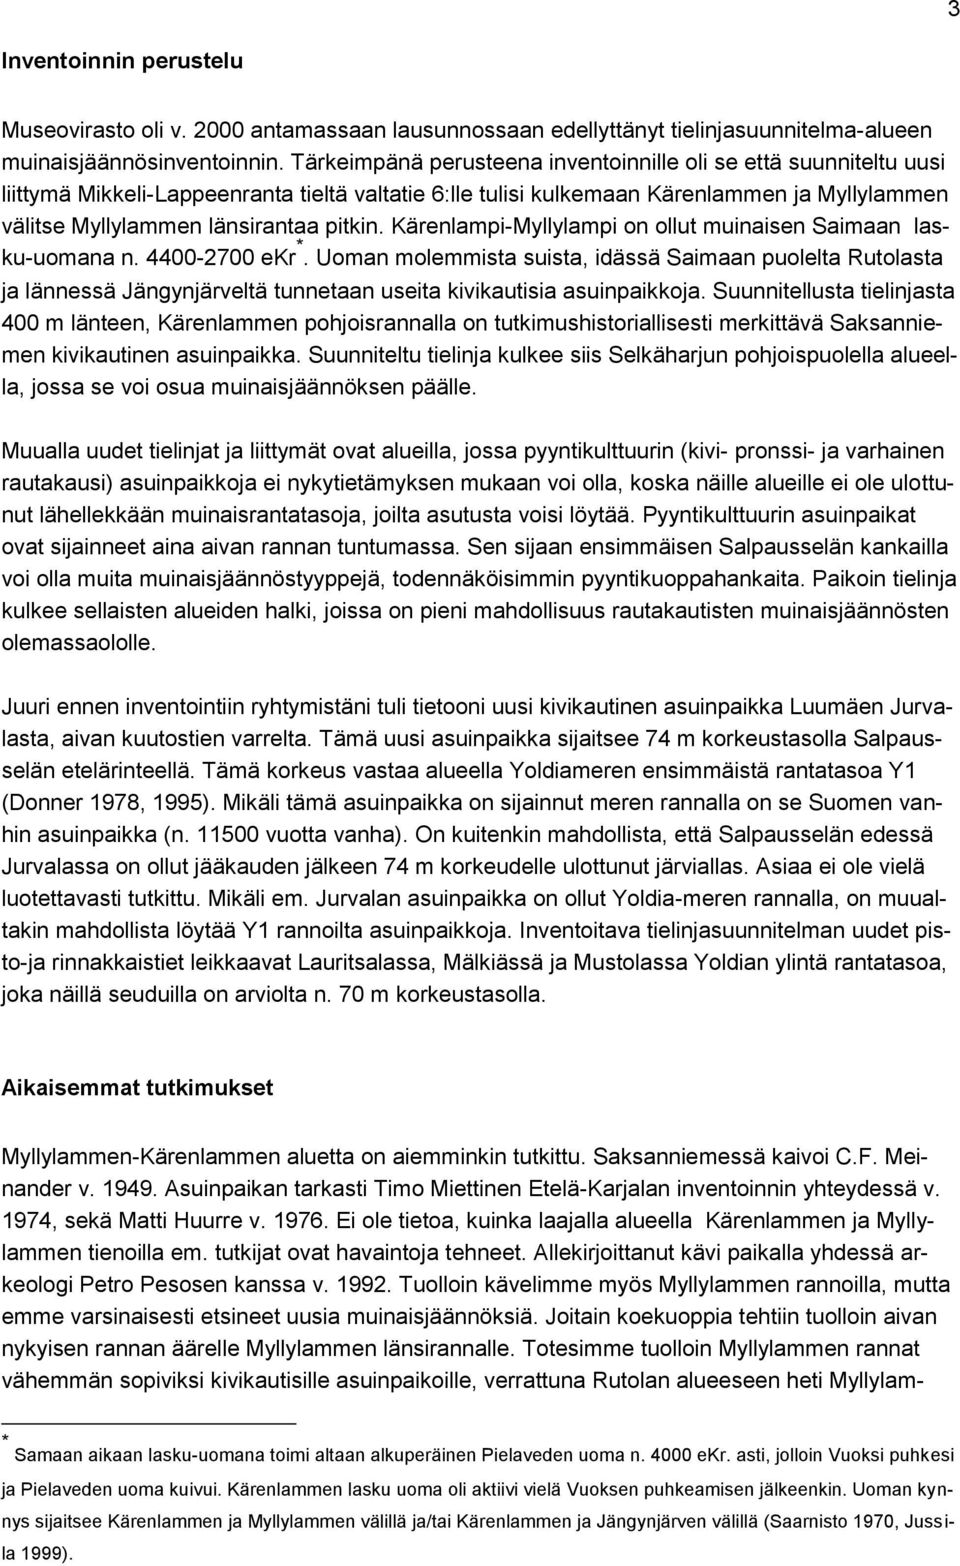 pitkin. Kärenlampi-Myllylampi on ollut muinaisen Saimaan lasku-uomana n. 4400-2700 ekr *.